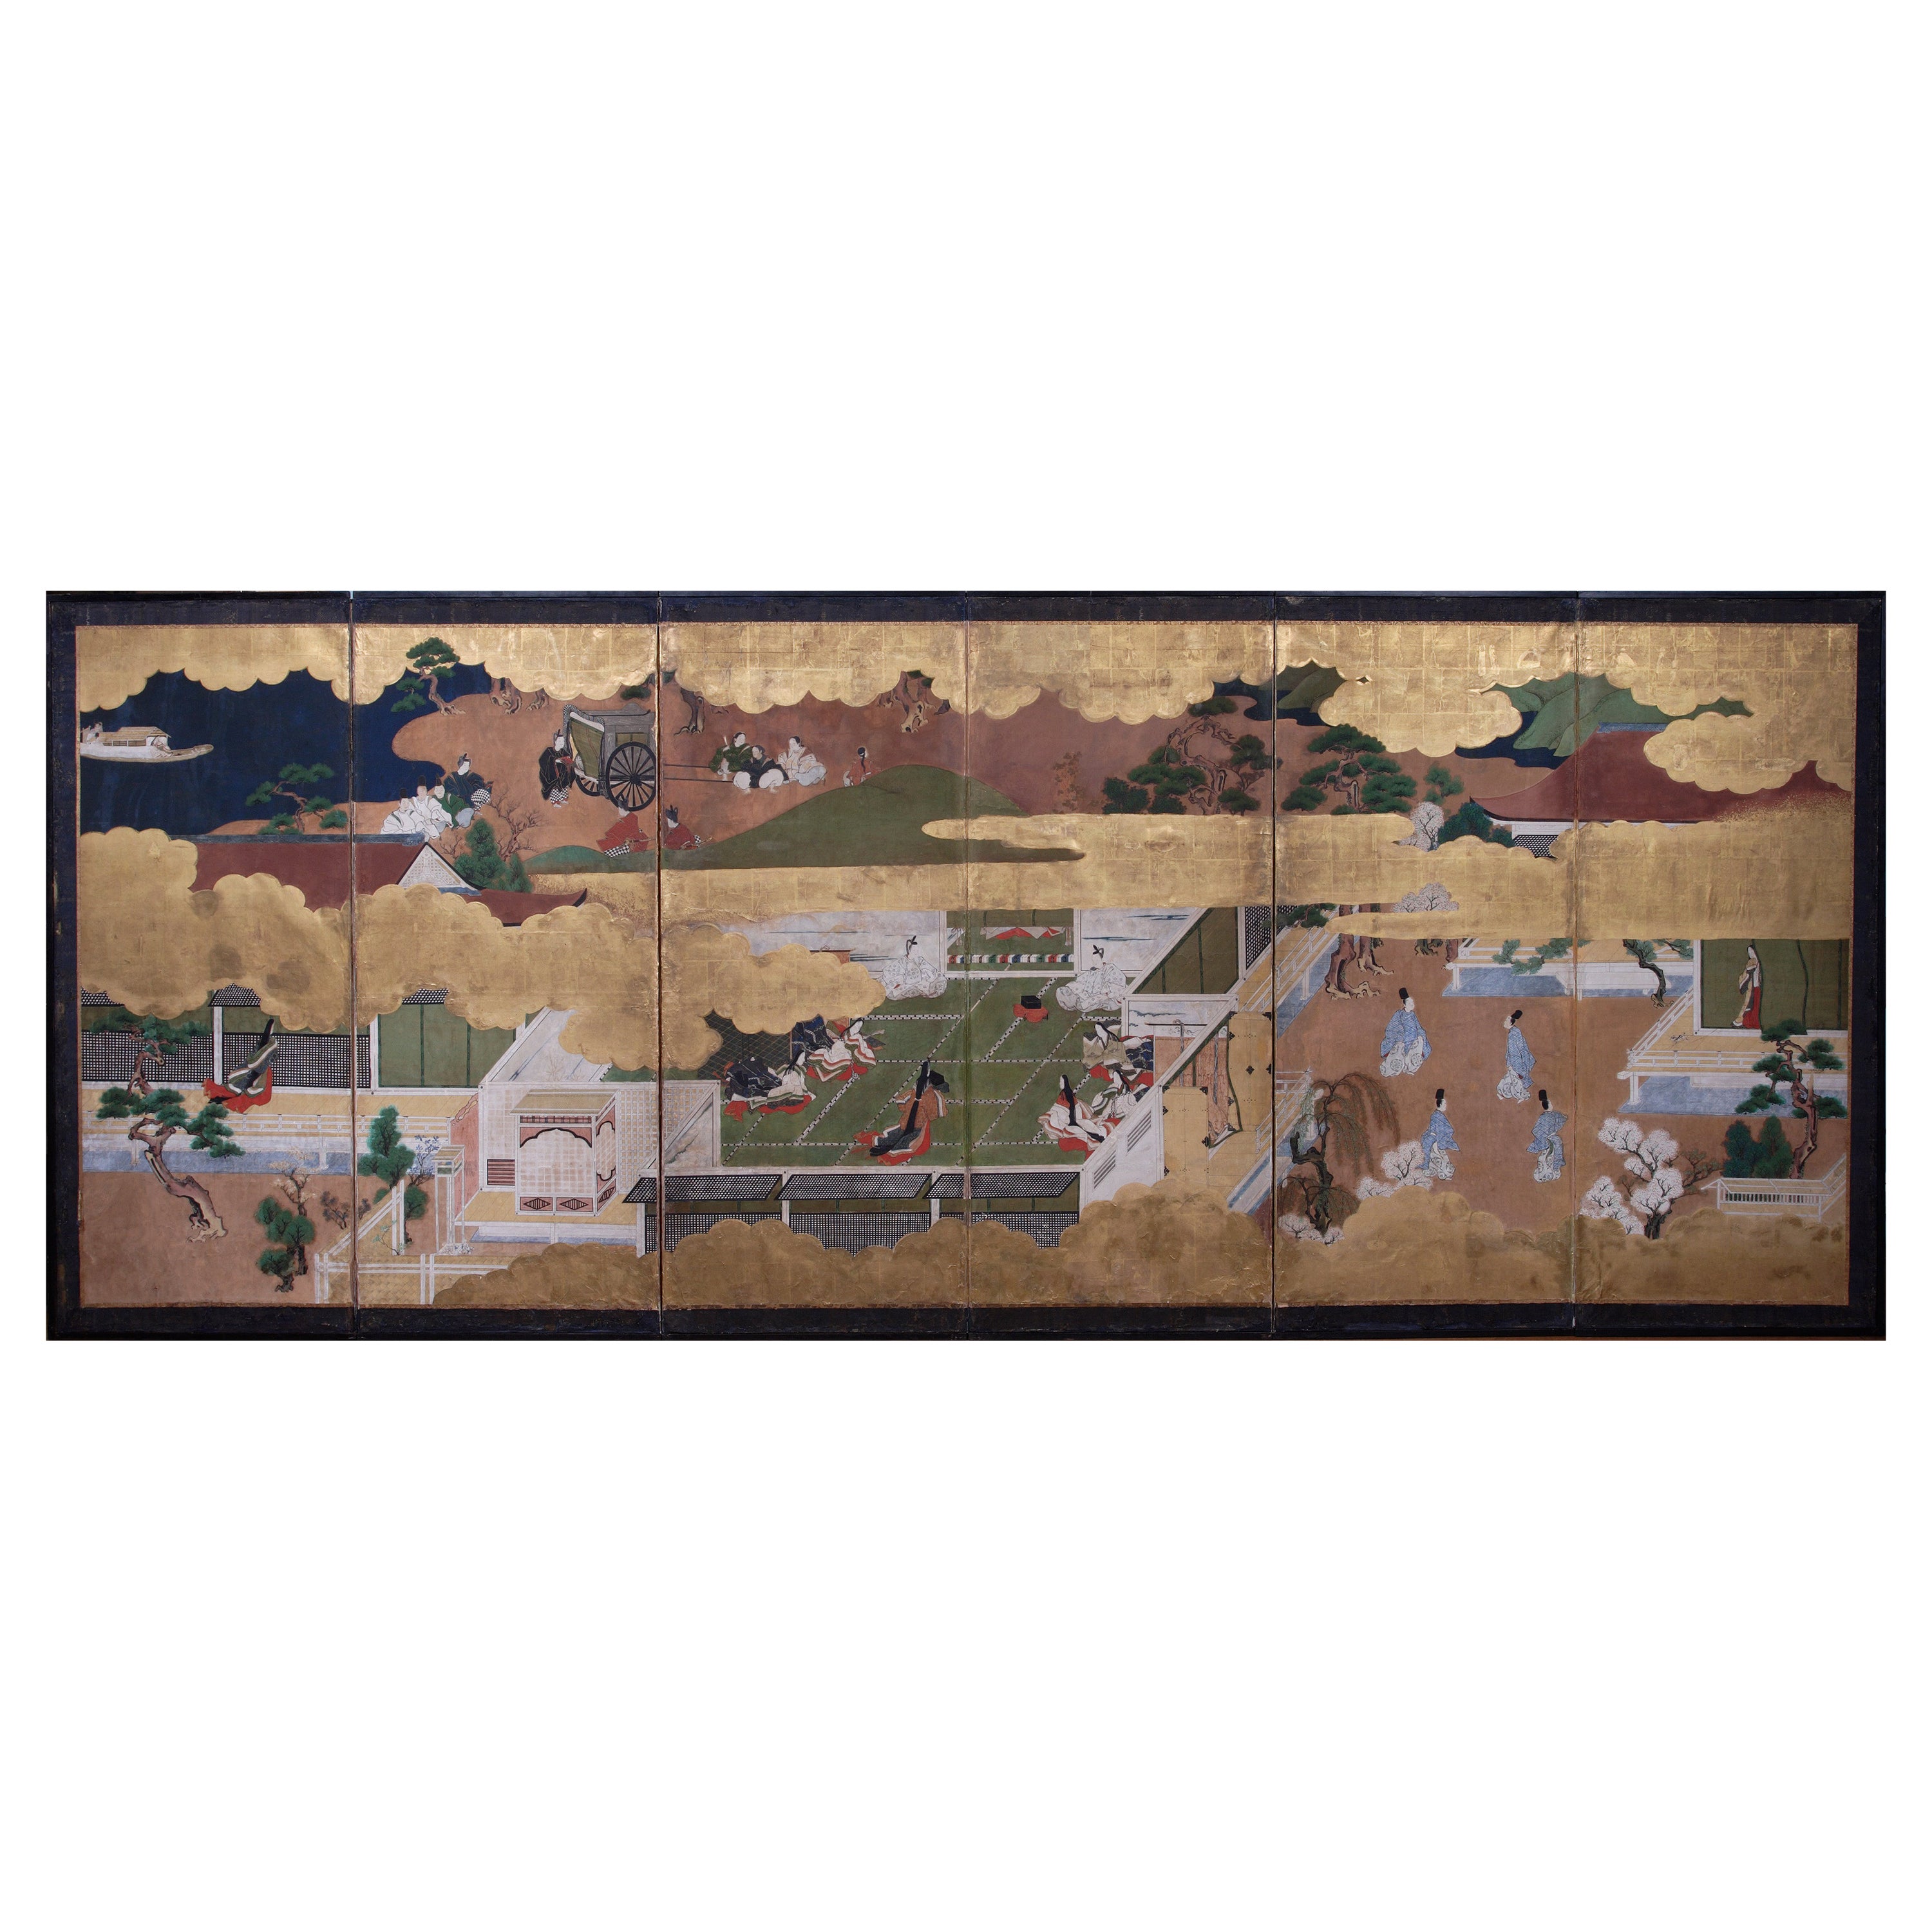 Important écran japonais à six volets représentant le conte de Genji, 17ème siècle